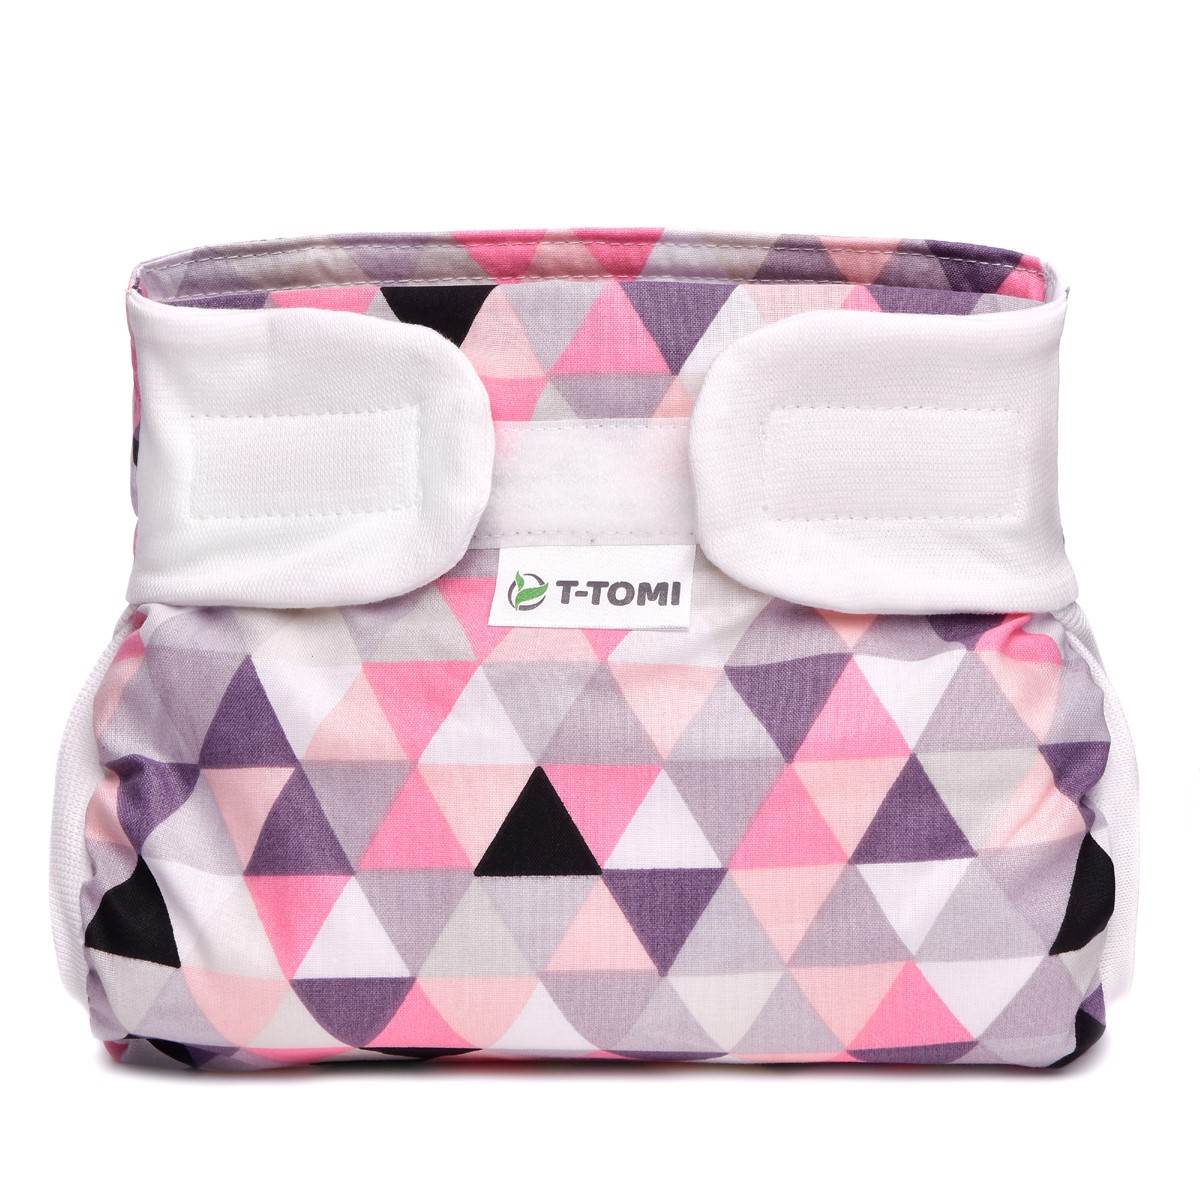 T-tomi Ortopedické abdukční kalhotky suchý zip 5–9 kg 1 ks pink triangles T-tomi